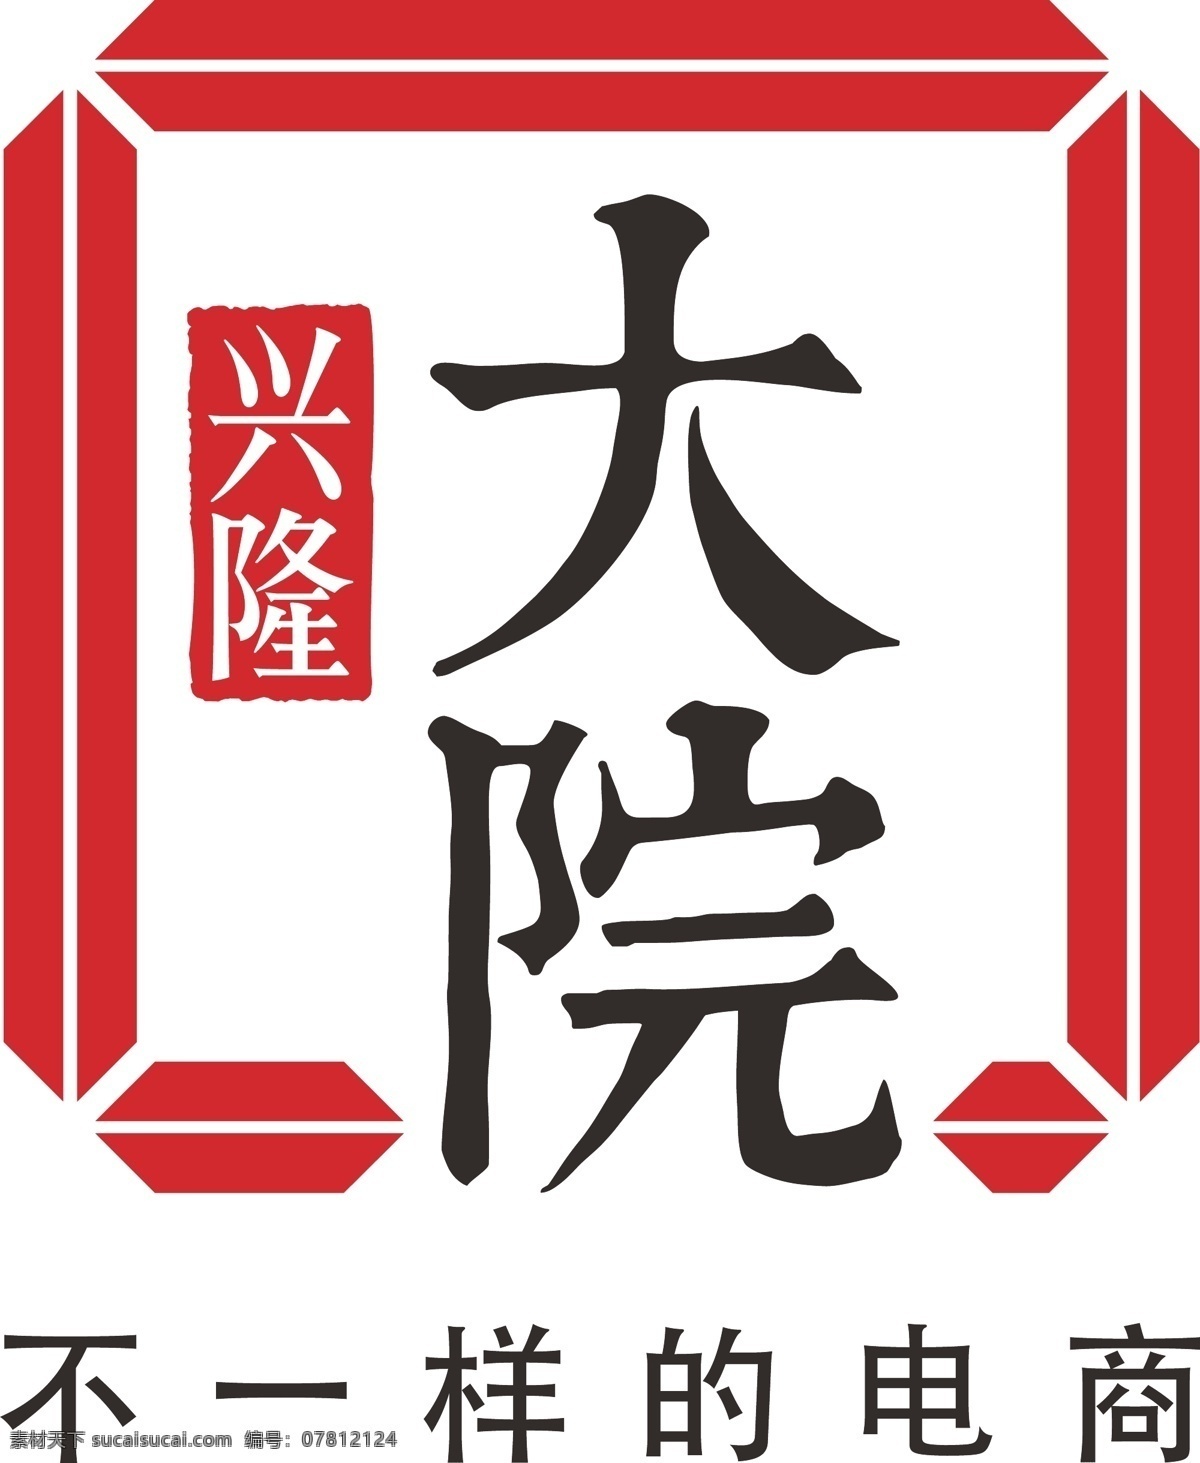 大院logo 商场 logo 标志 红色